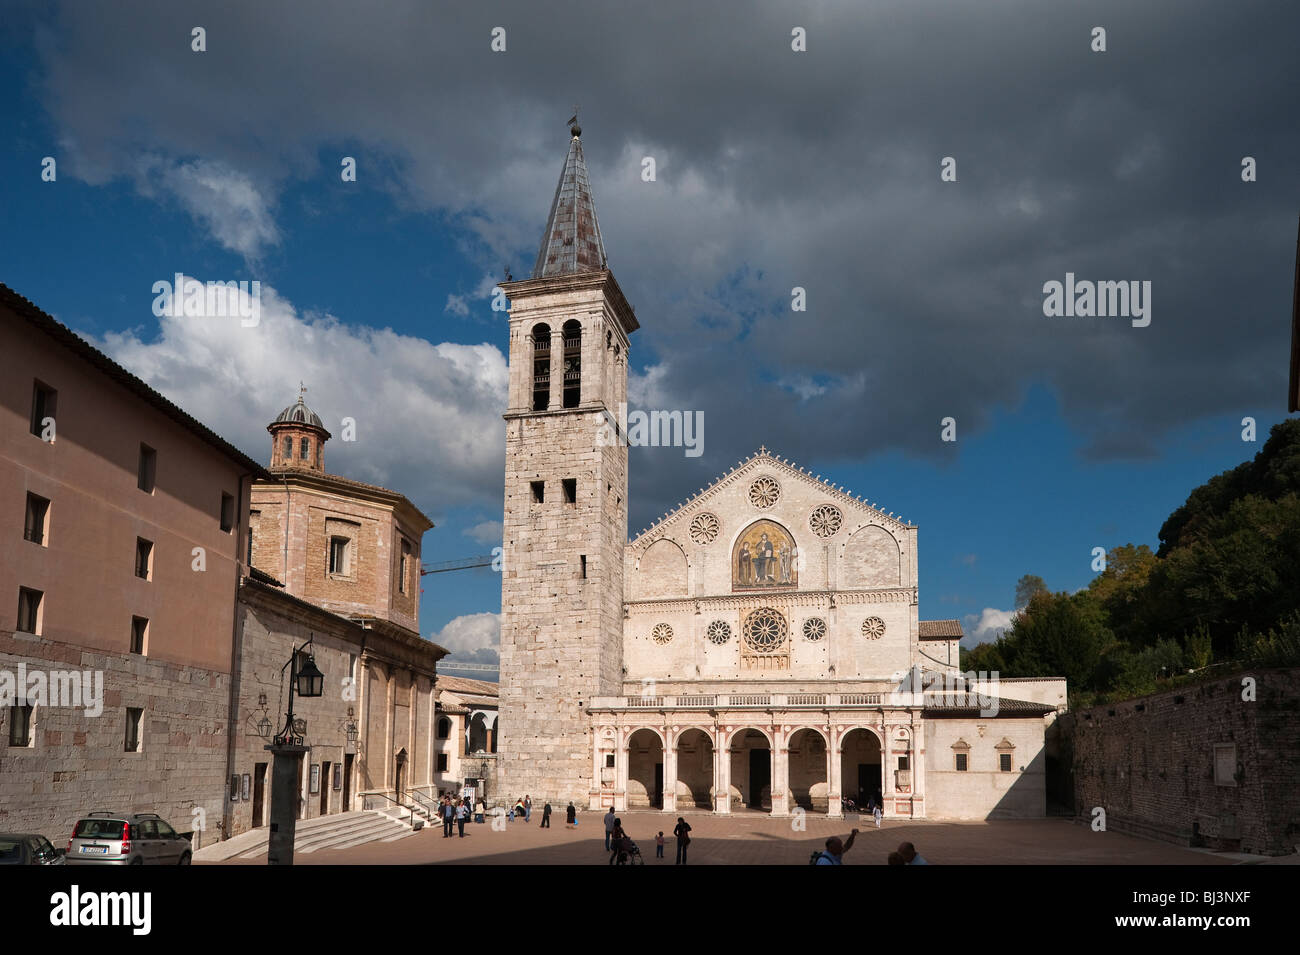 Duomo Santa Maria Assunta, cathedral, Spoleto, Umbria, Italy, Europe Stock Photo